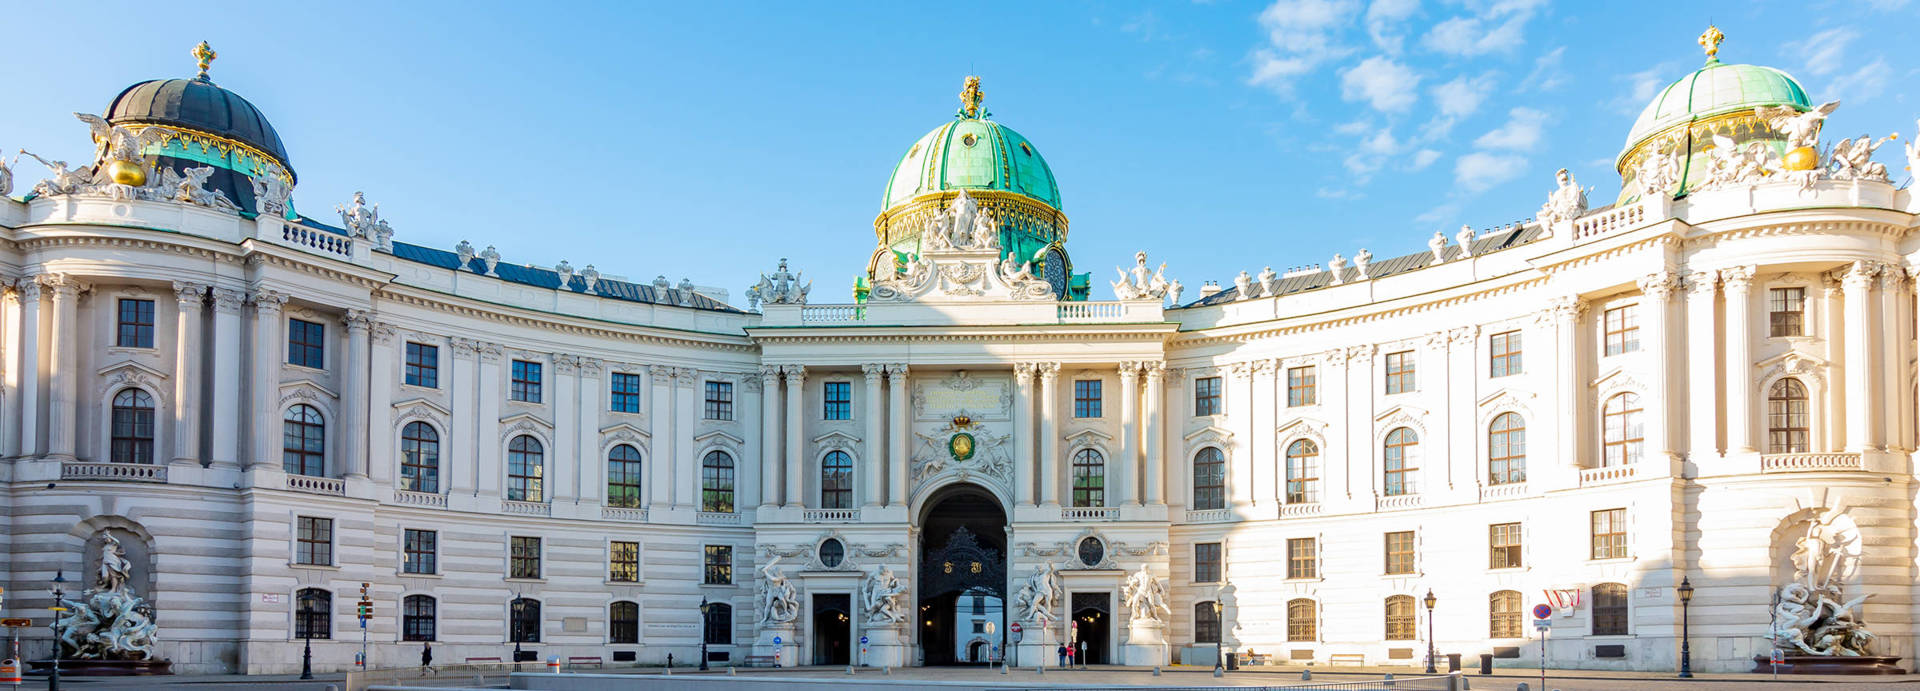 Museen von Wien: Hofburg - H-Hotels.com